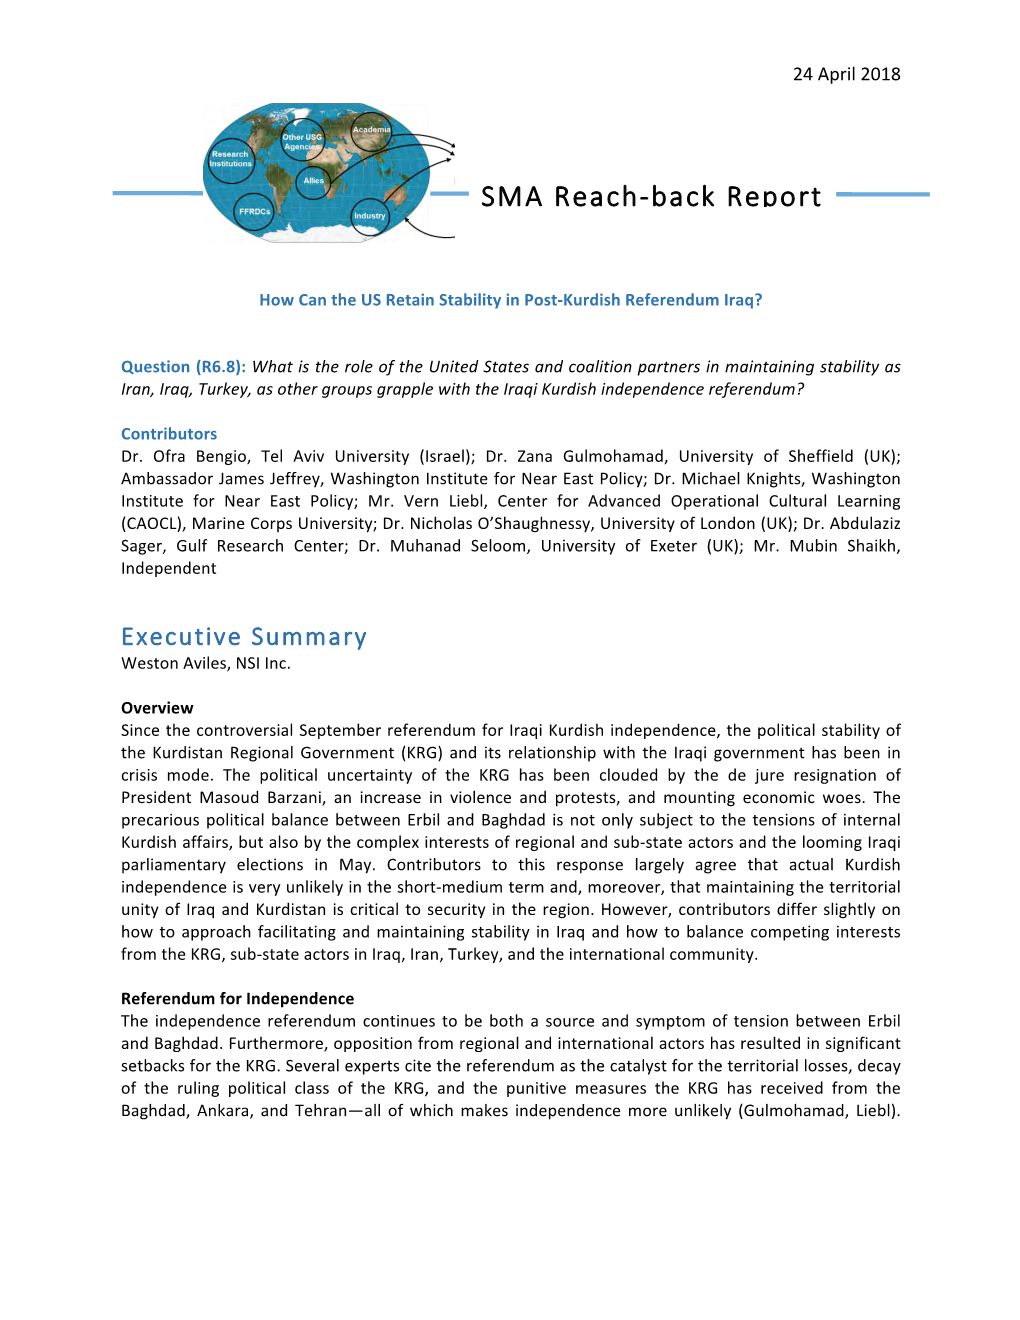 SMA Reach-Back Report